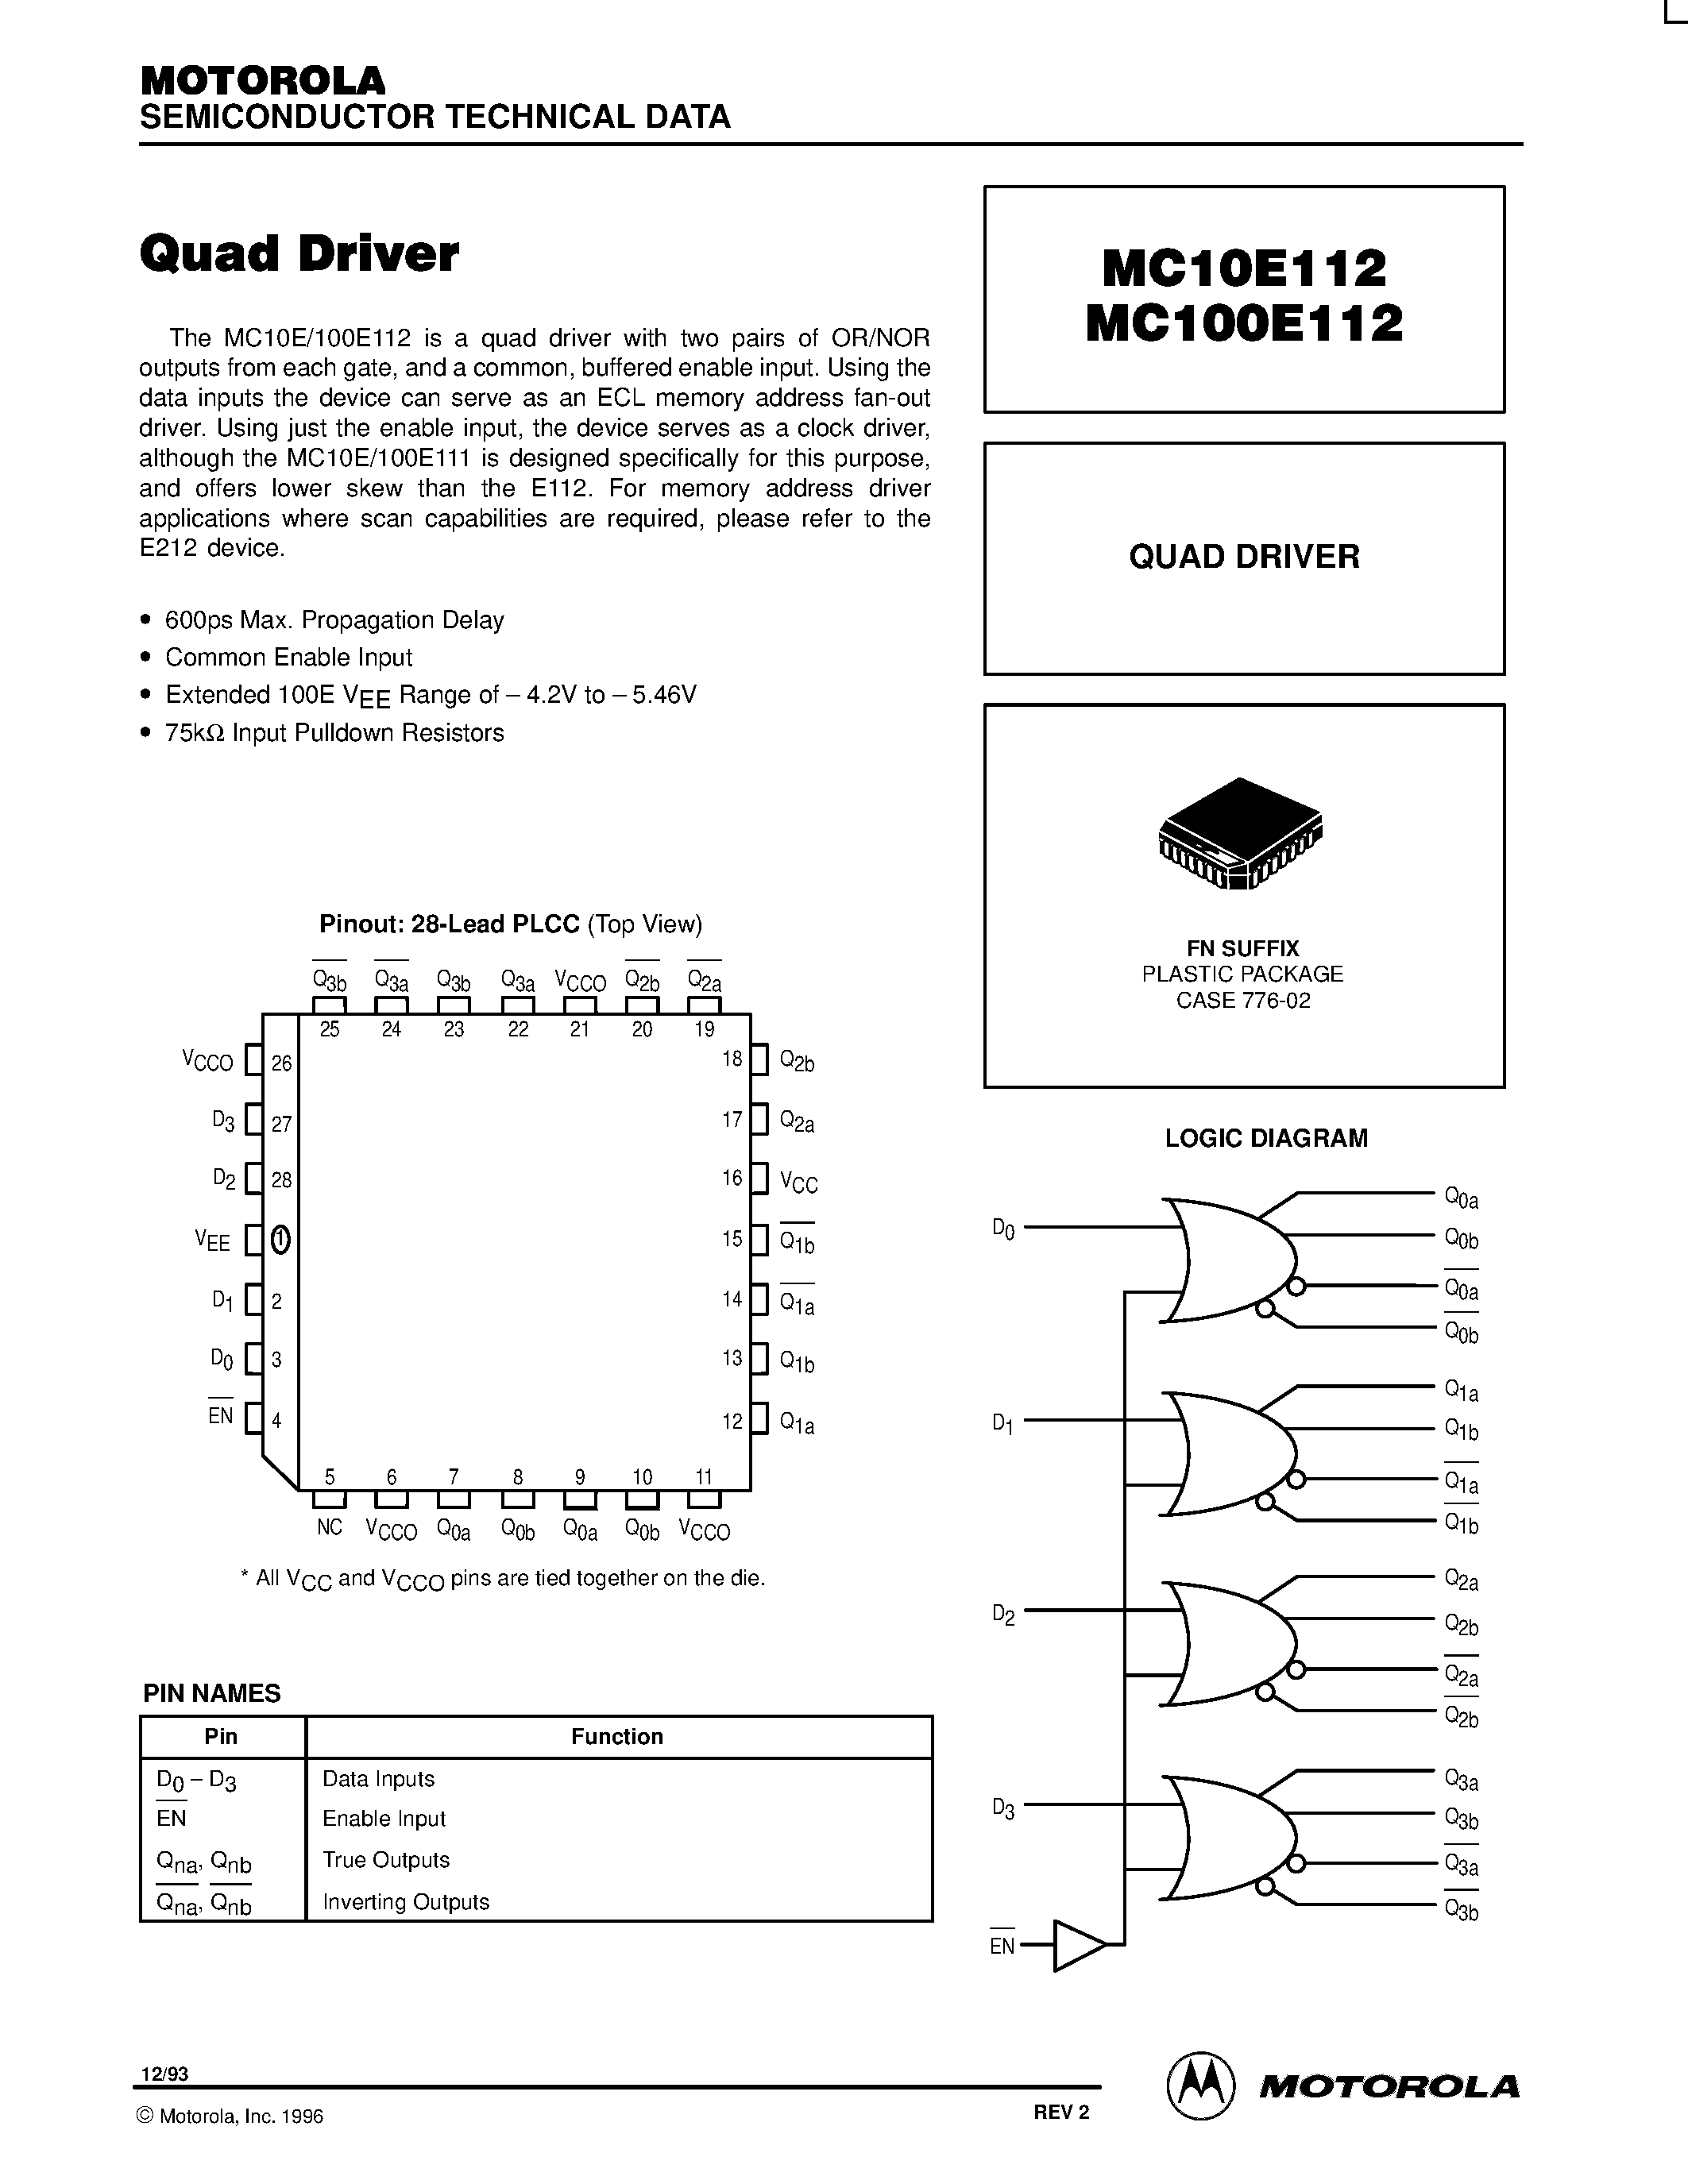 Даташит MC100E112 - QUAD DRIVER страница 1